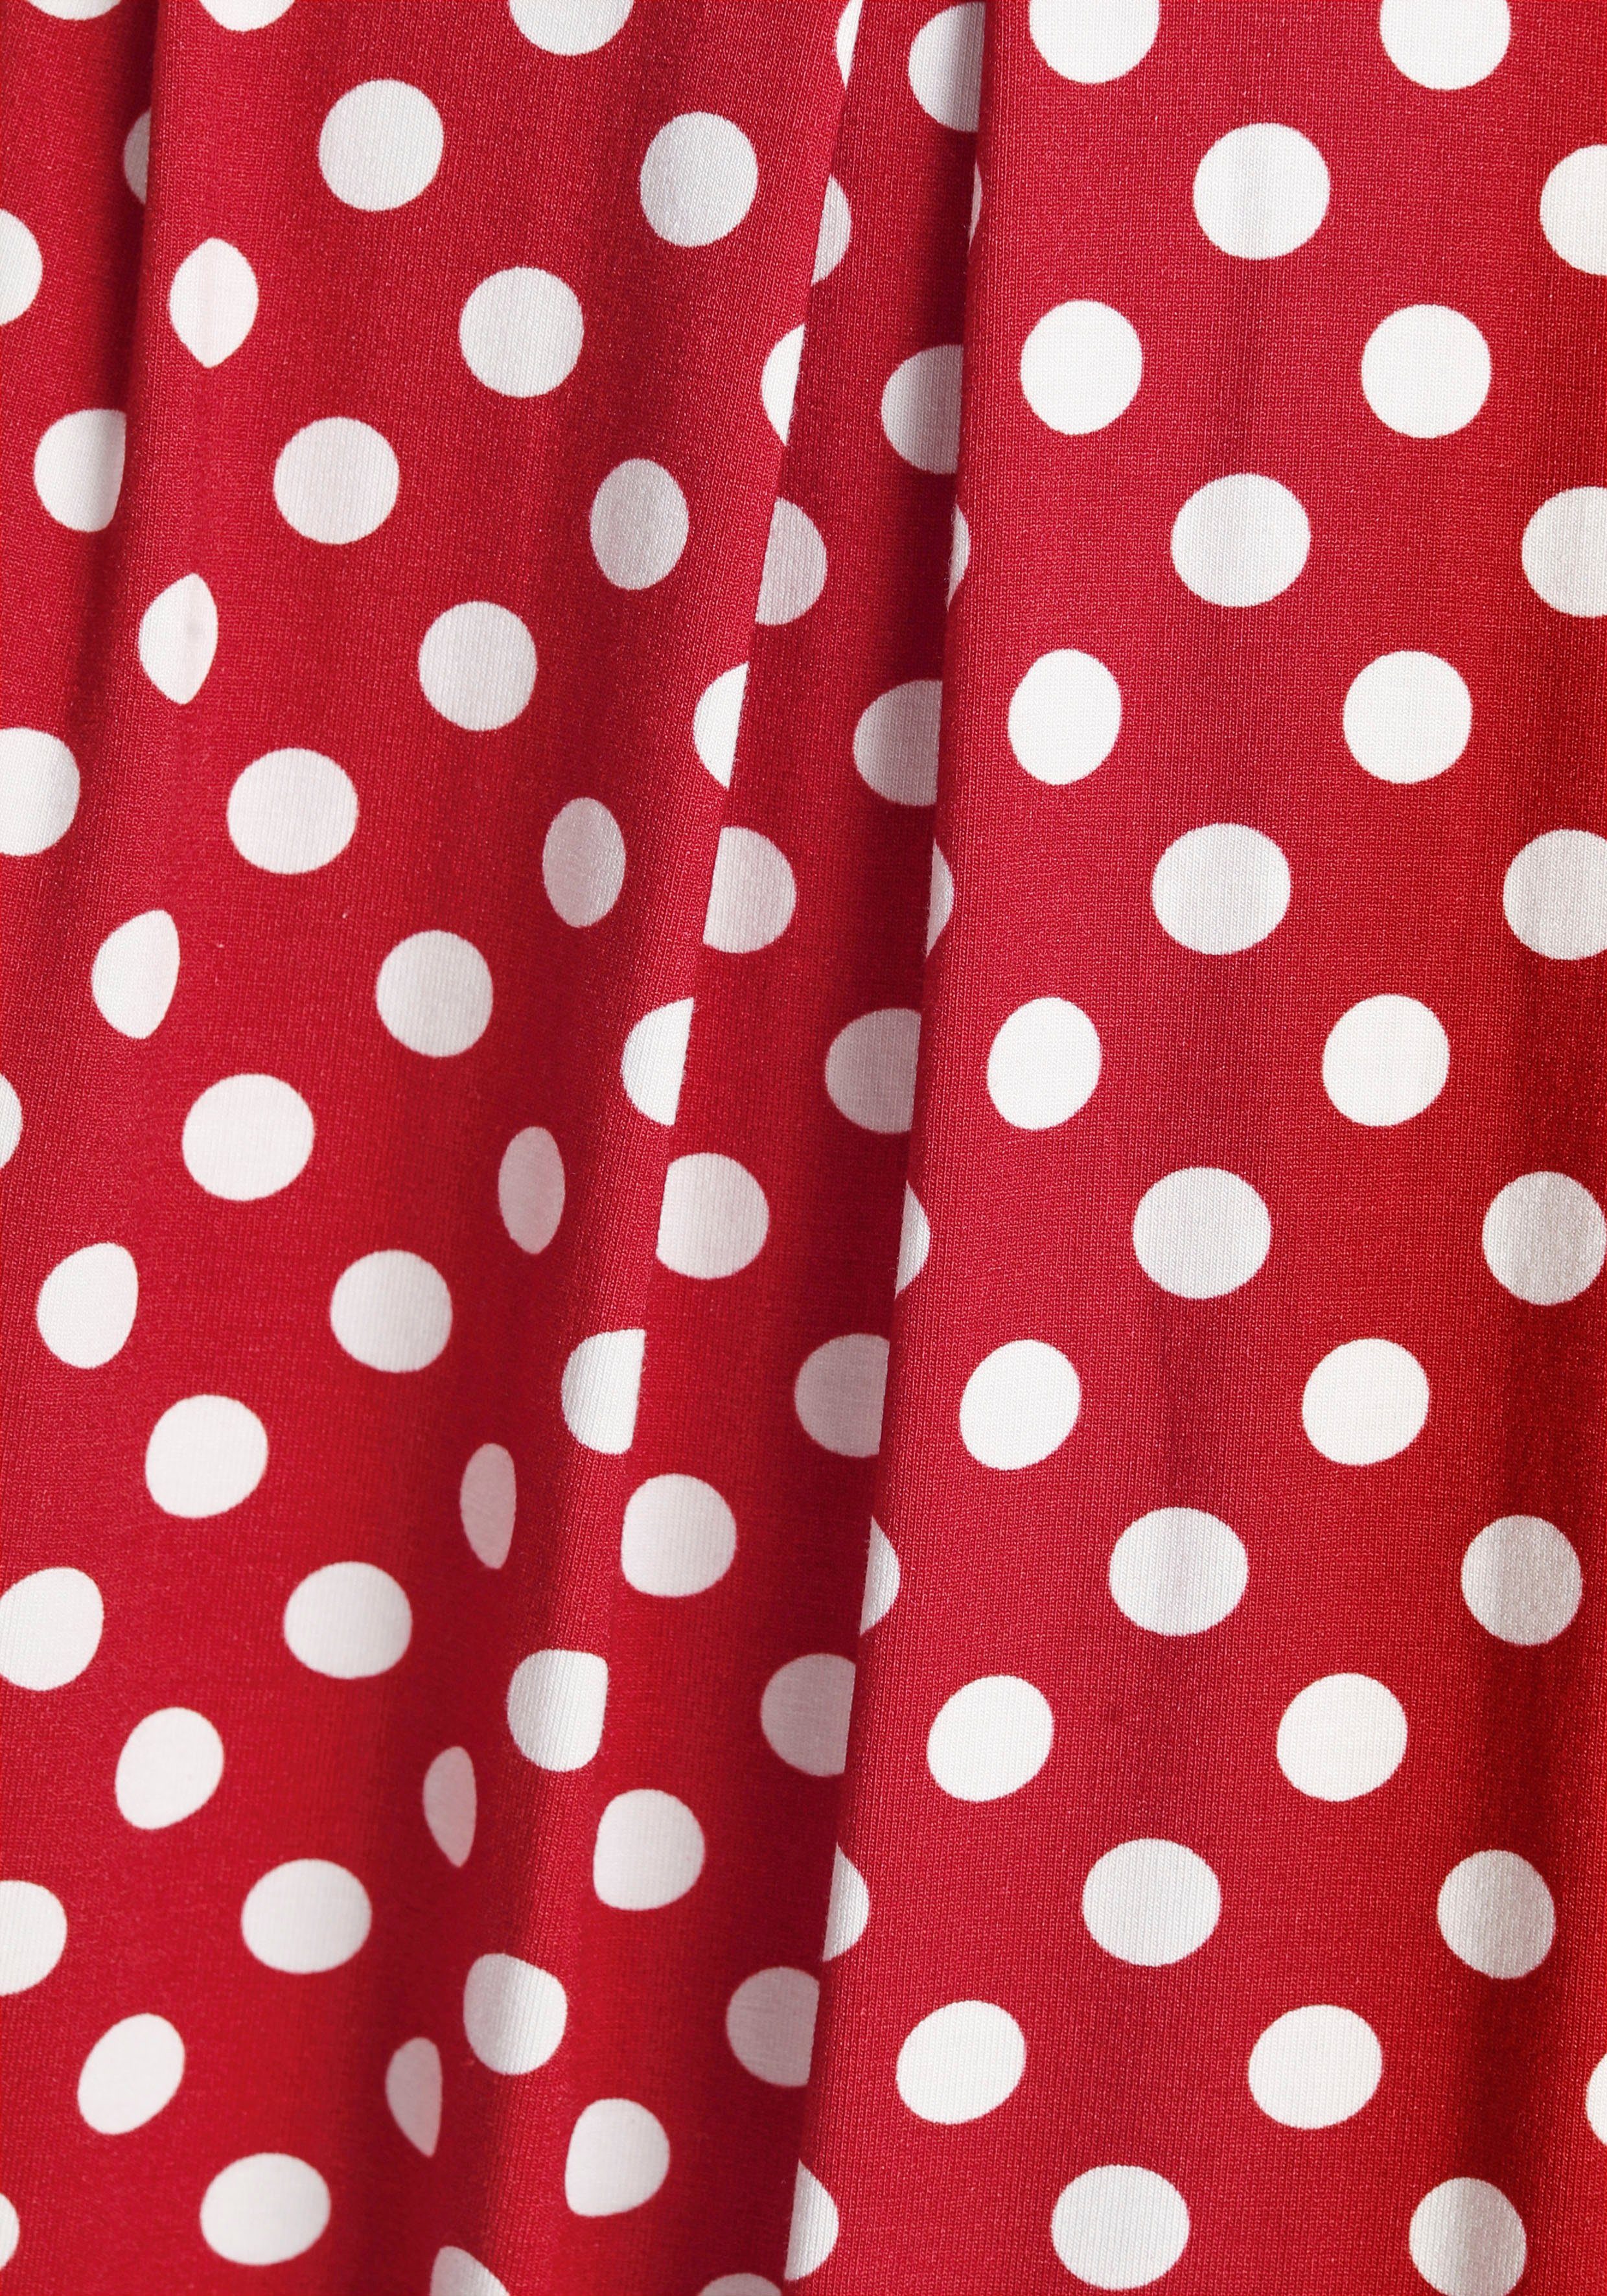 Boysen's Jerseykleid mit süßem Tupfen-Print rot, weiß